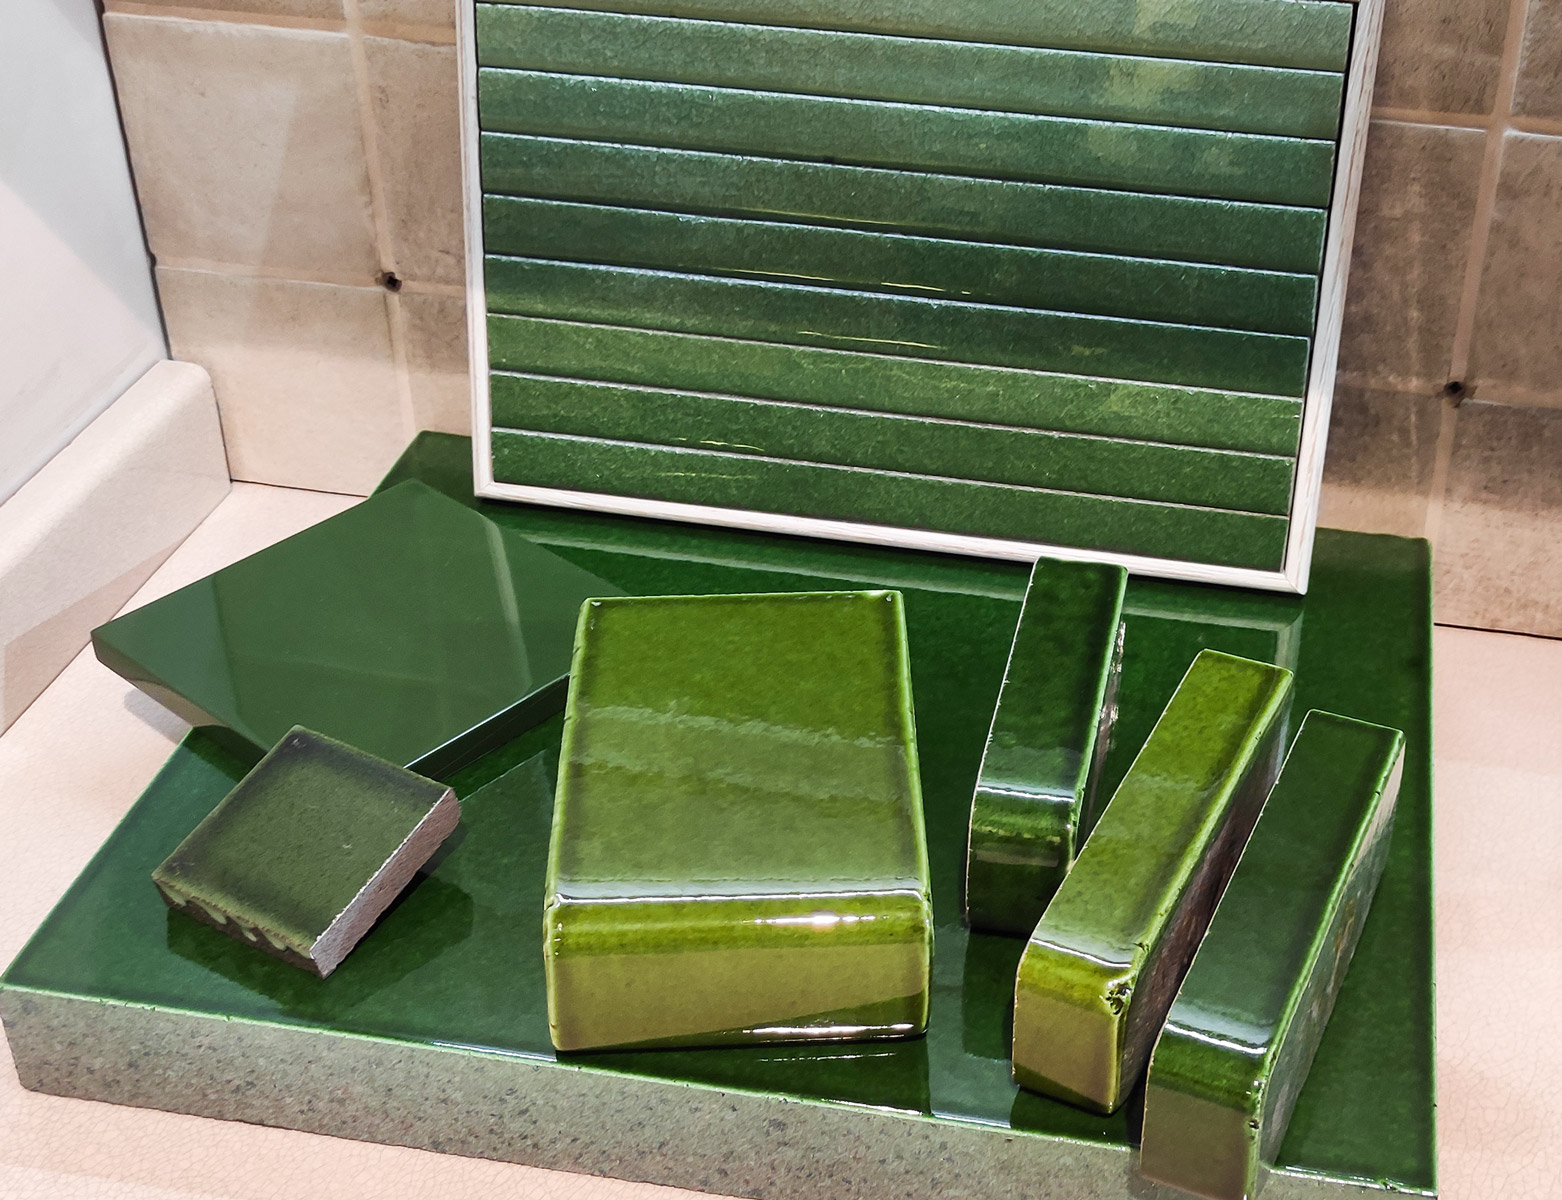 Rivestimenti per top in pietra lavica verde per cucine moderne, bagno, pavimenti, piscine e rivestimenti interior/exterior design